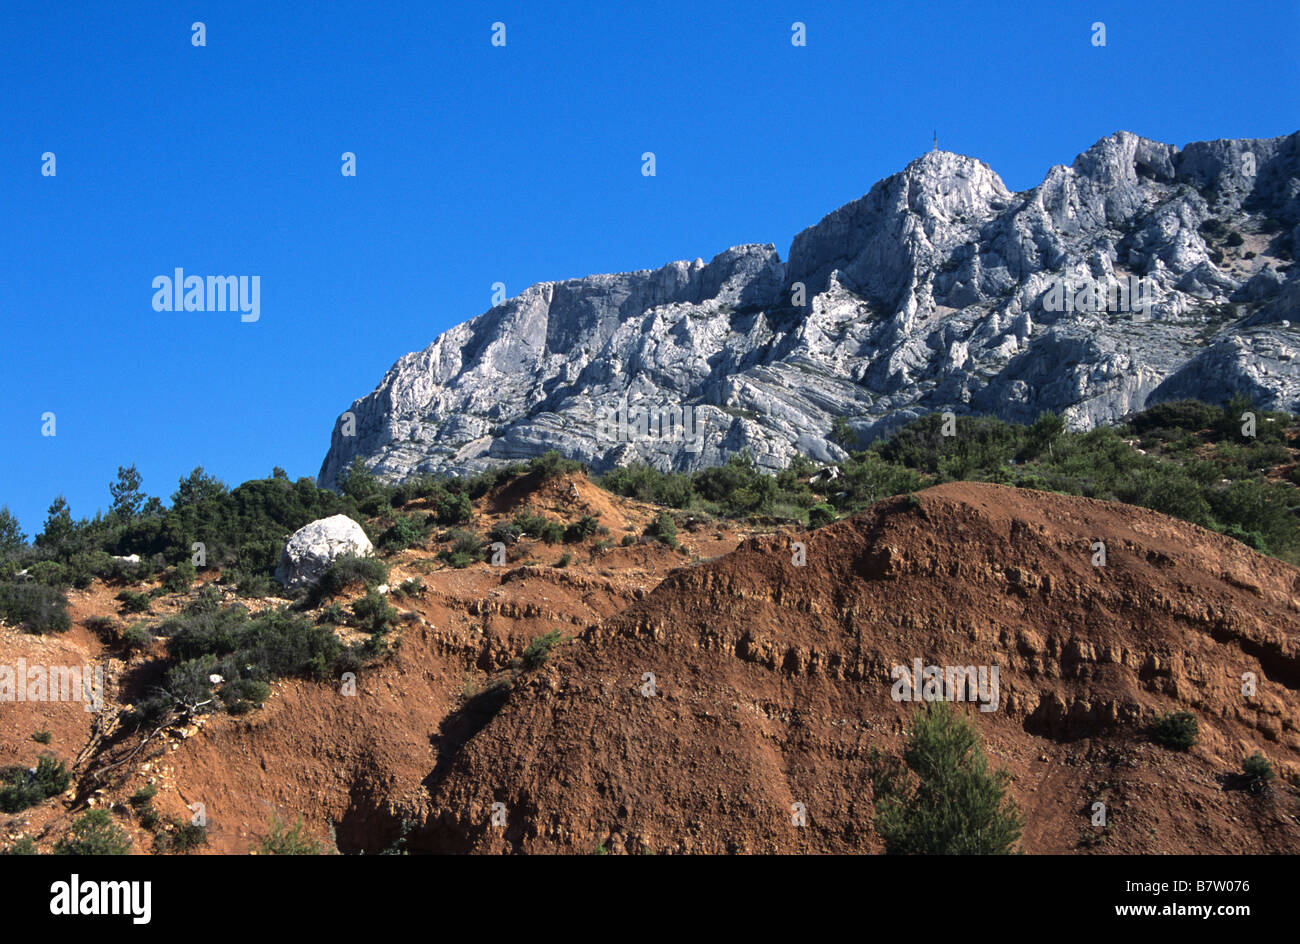 Mont Sainte-Victoire or Sainte Victoire Mountain & Sandstone Outcrop, Painted by Paul Cezanne, near Aix-en-Provence, France Stock Photo